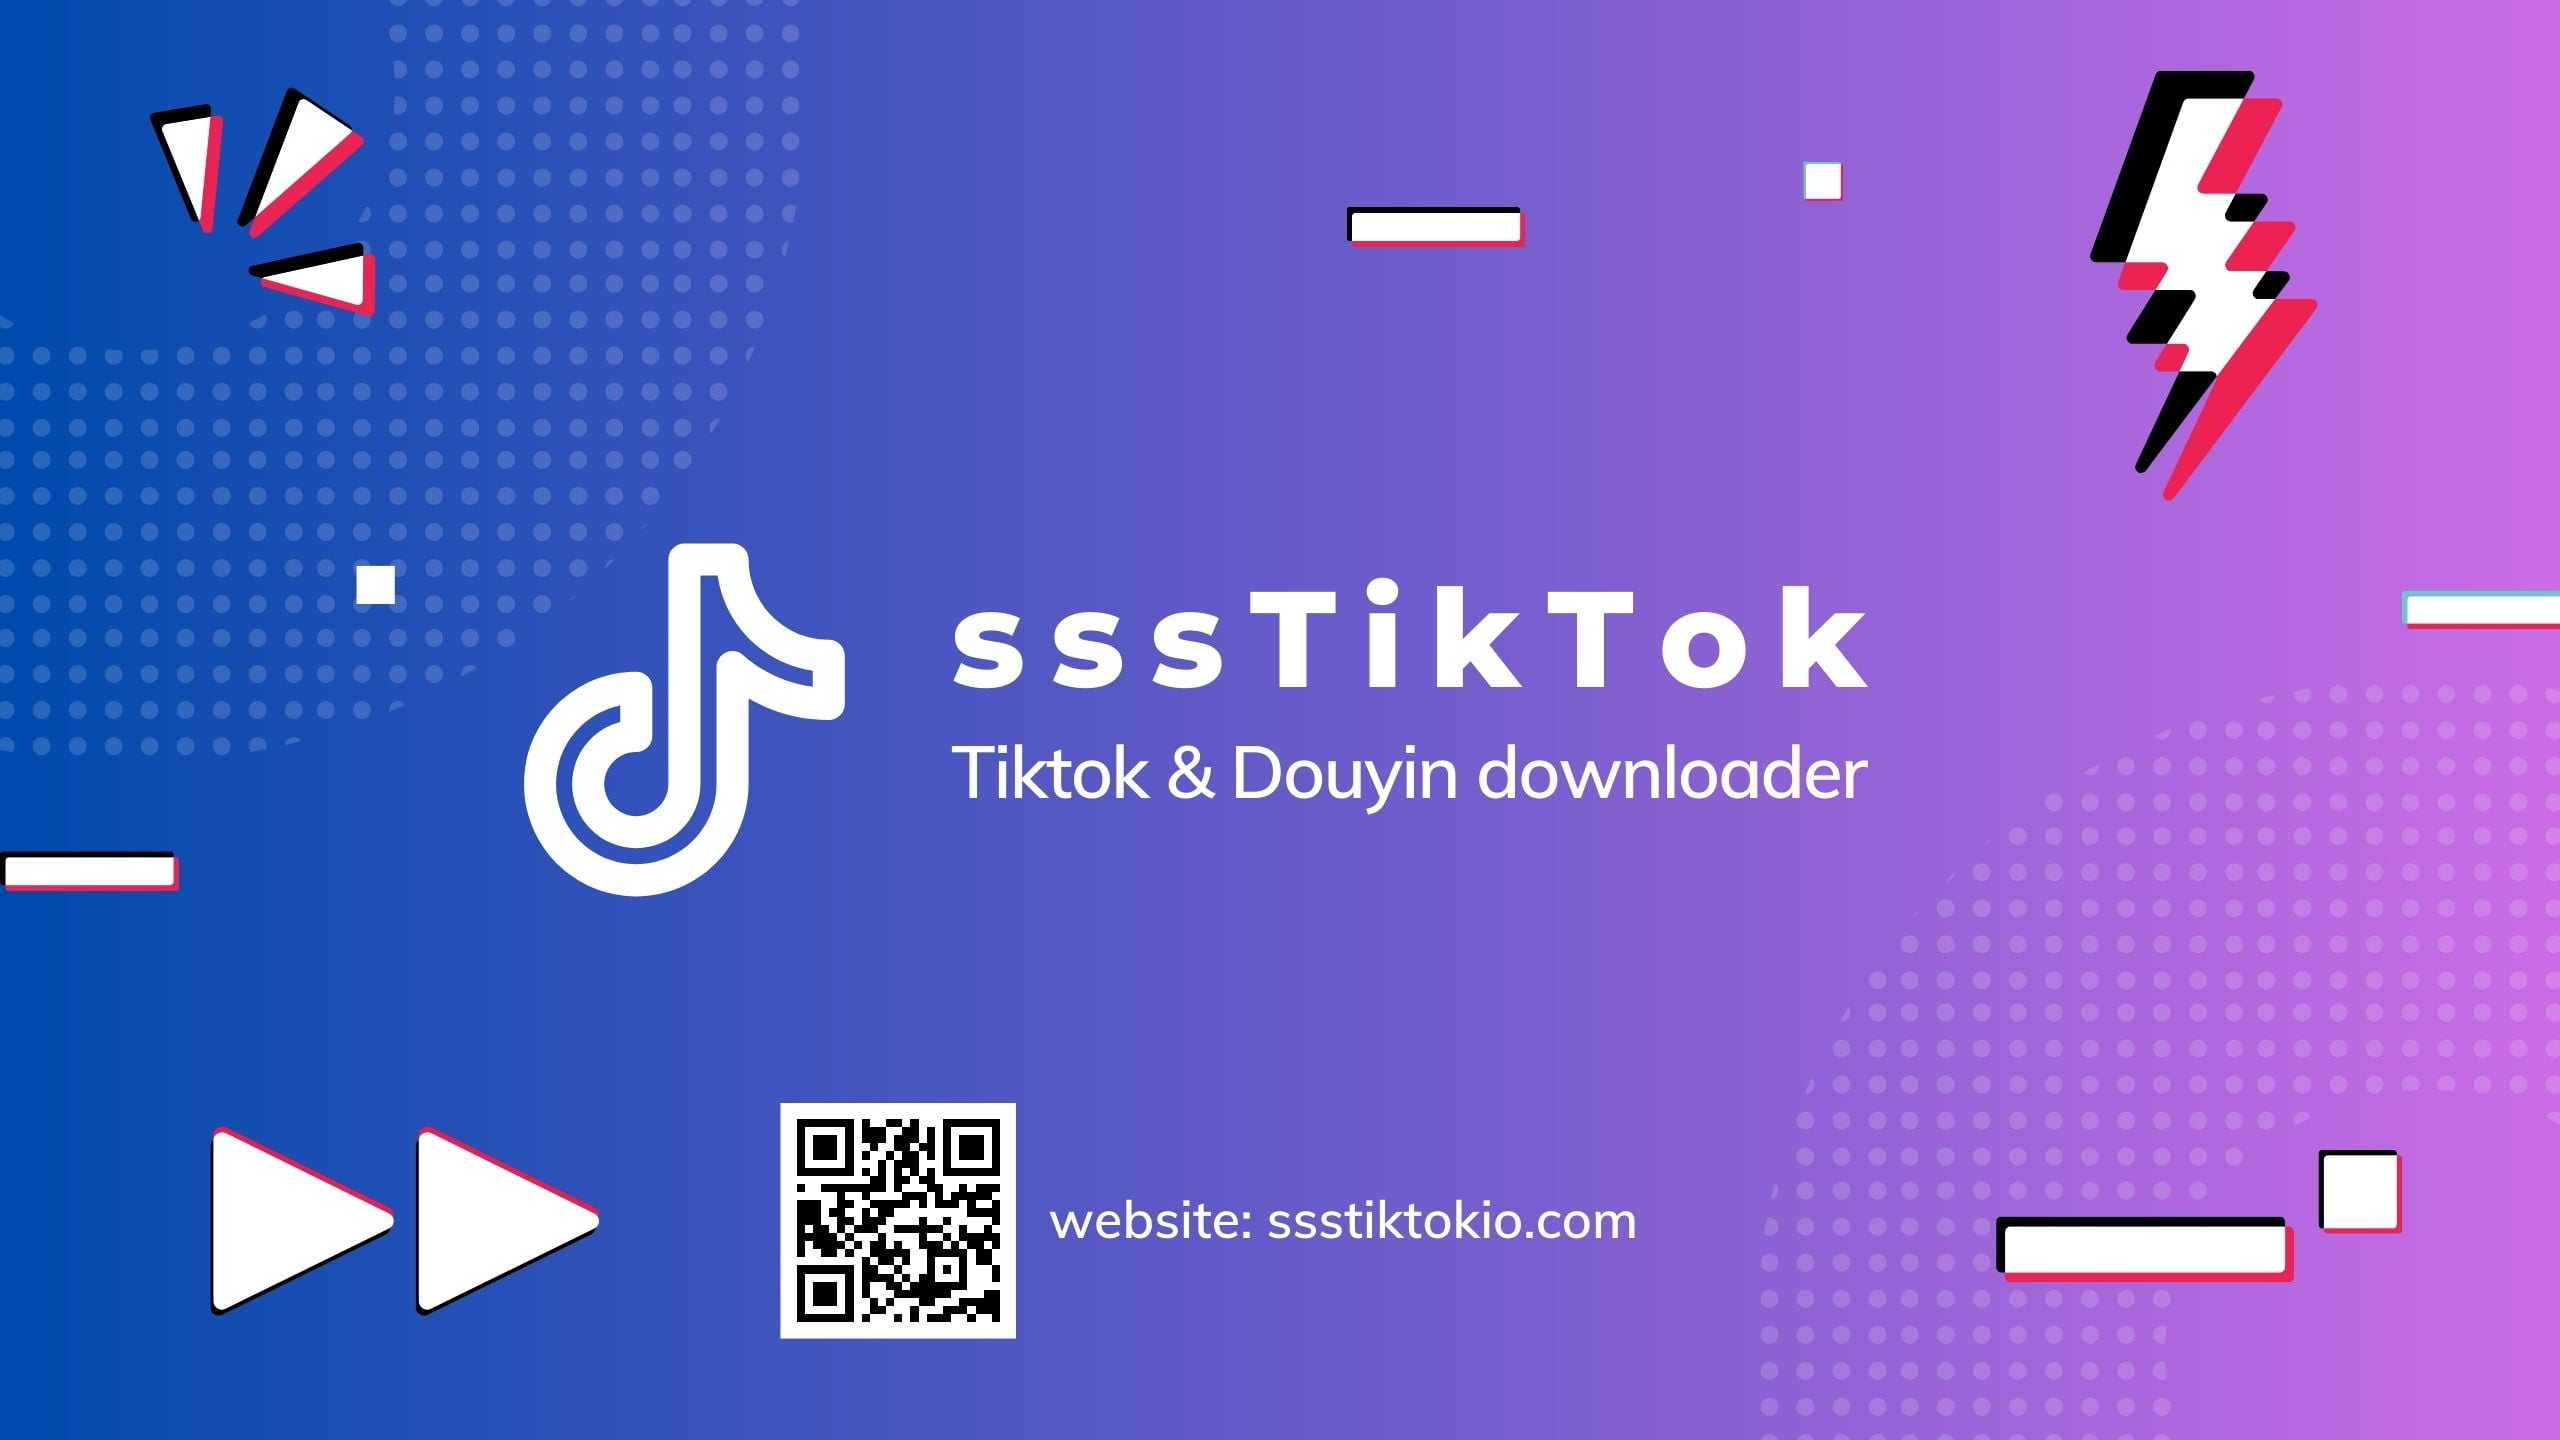 sssTiktok - 틱톡 다운로더 온라인 - 로고 없이 틱톡 에서 비디오 다운로드